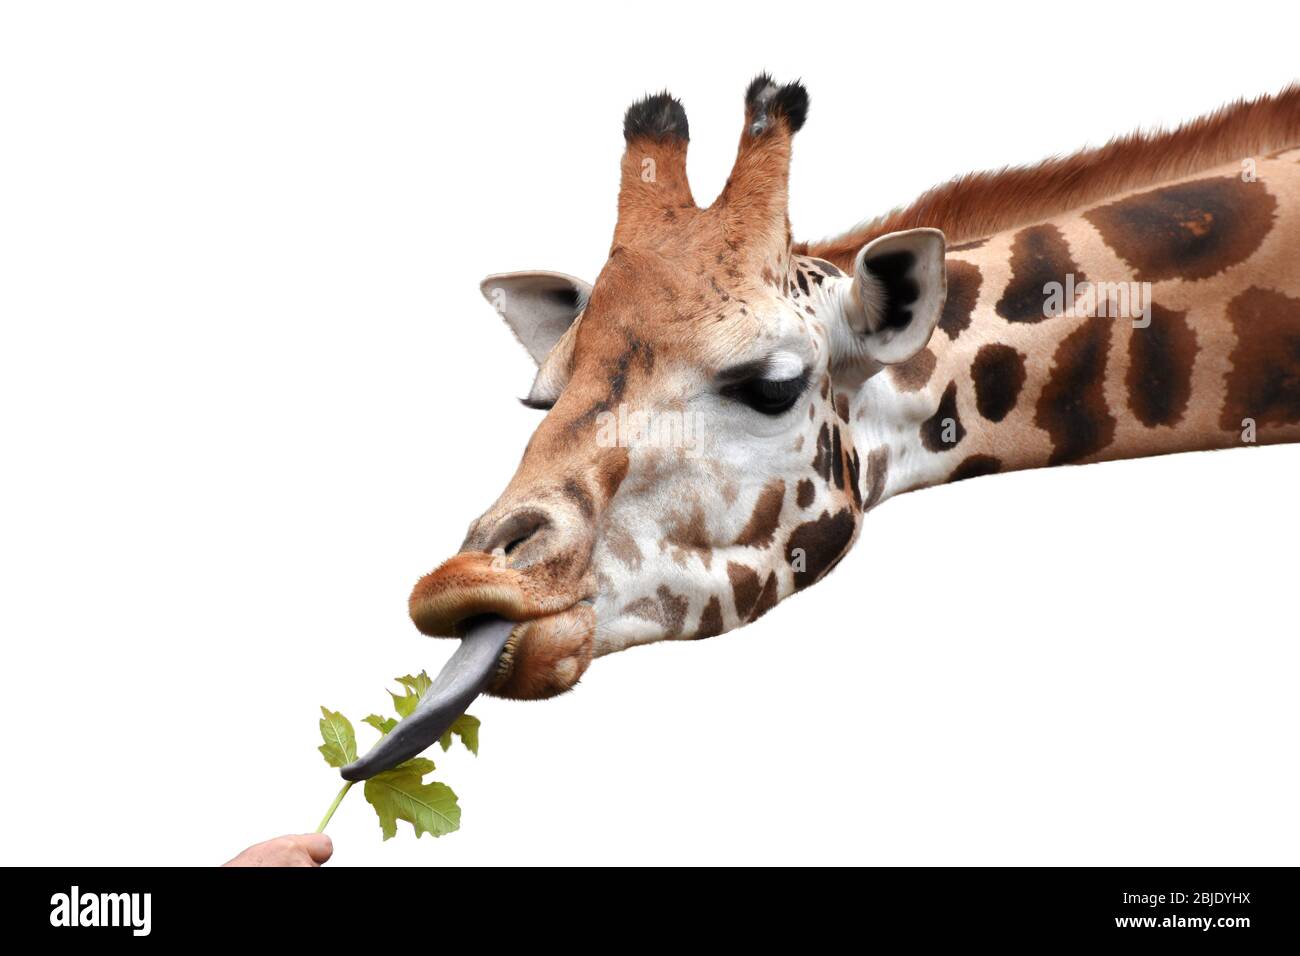 Giraffe isst grünes Blatt aus menschlicher Hand. Weißer Hintergrund. Stockfoto